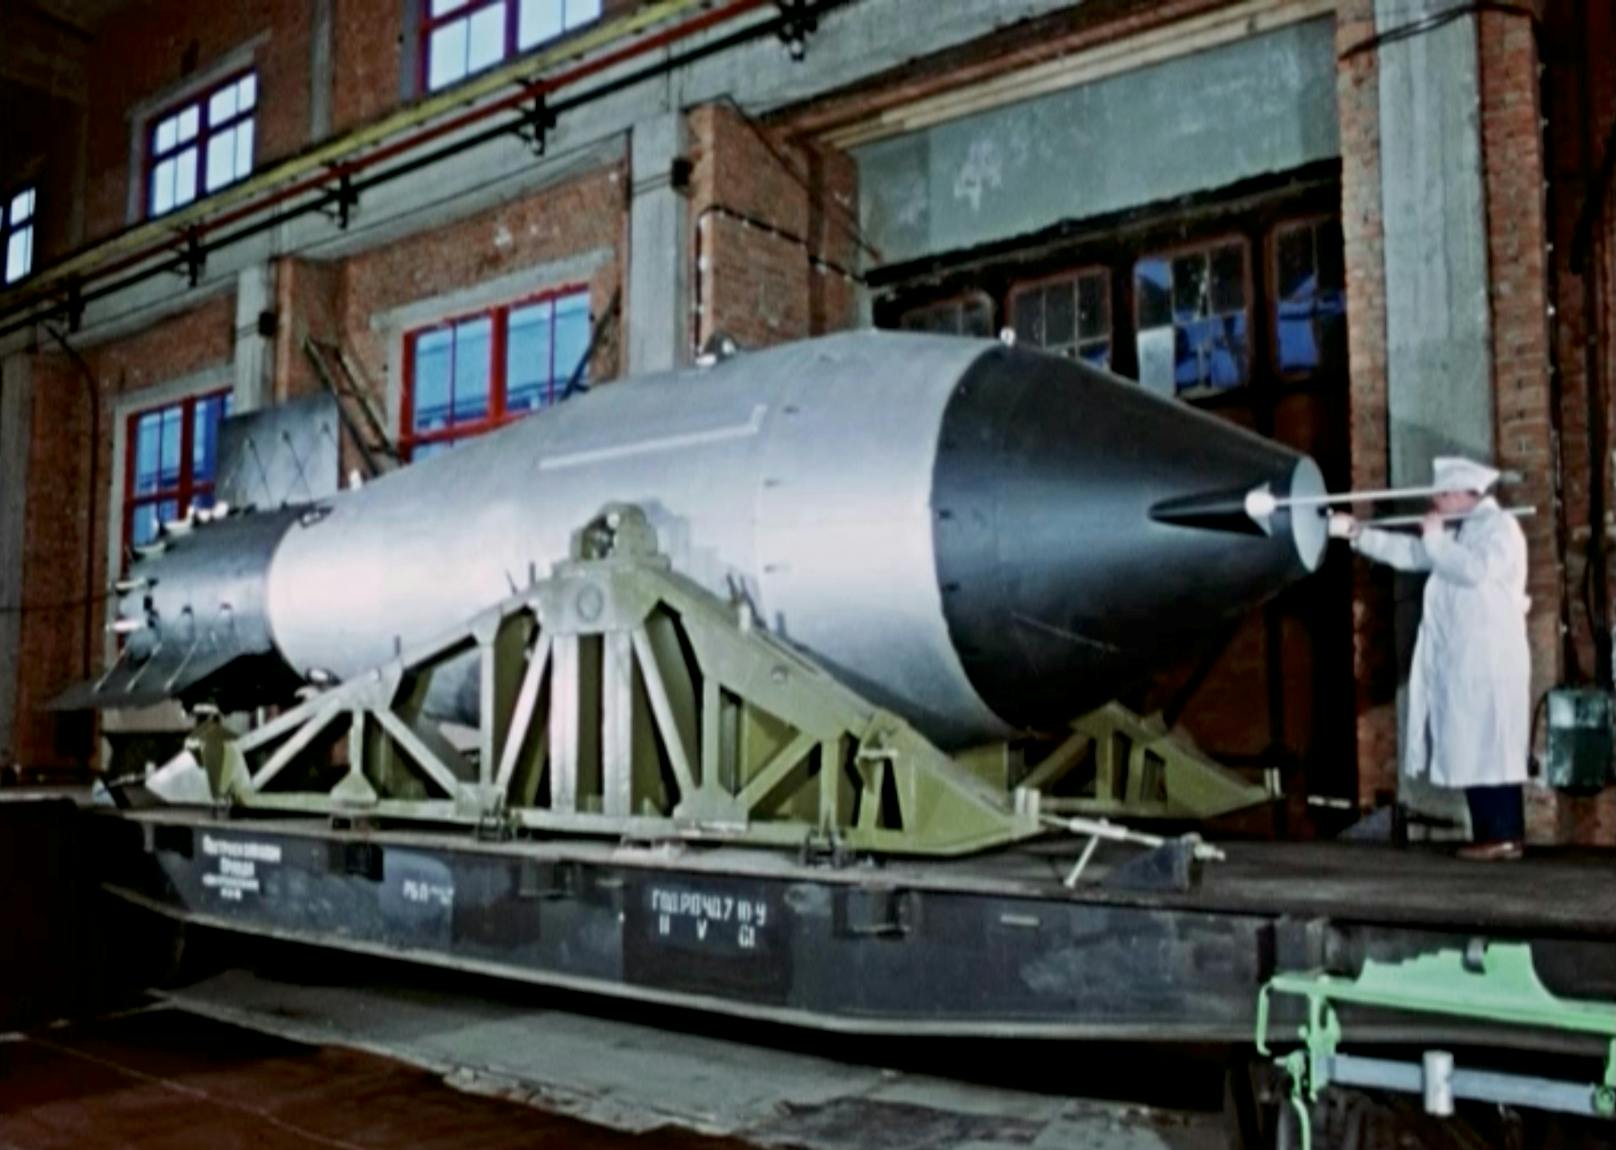 Trotz ihres gewaltigen Zerstörungspotenzials stellte sich die 27 Tonnen schwere "Zar-Bombe" als nicht praktikabel heraus. Obwohl eine relativ "saubere" Atombombe, war für den Kreml die radioaktive Verseuchung durch sie "nicht akzeptabel".